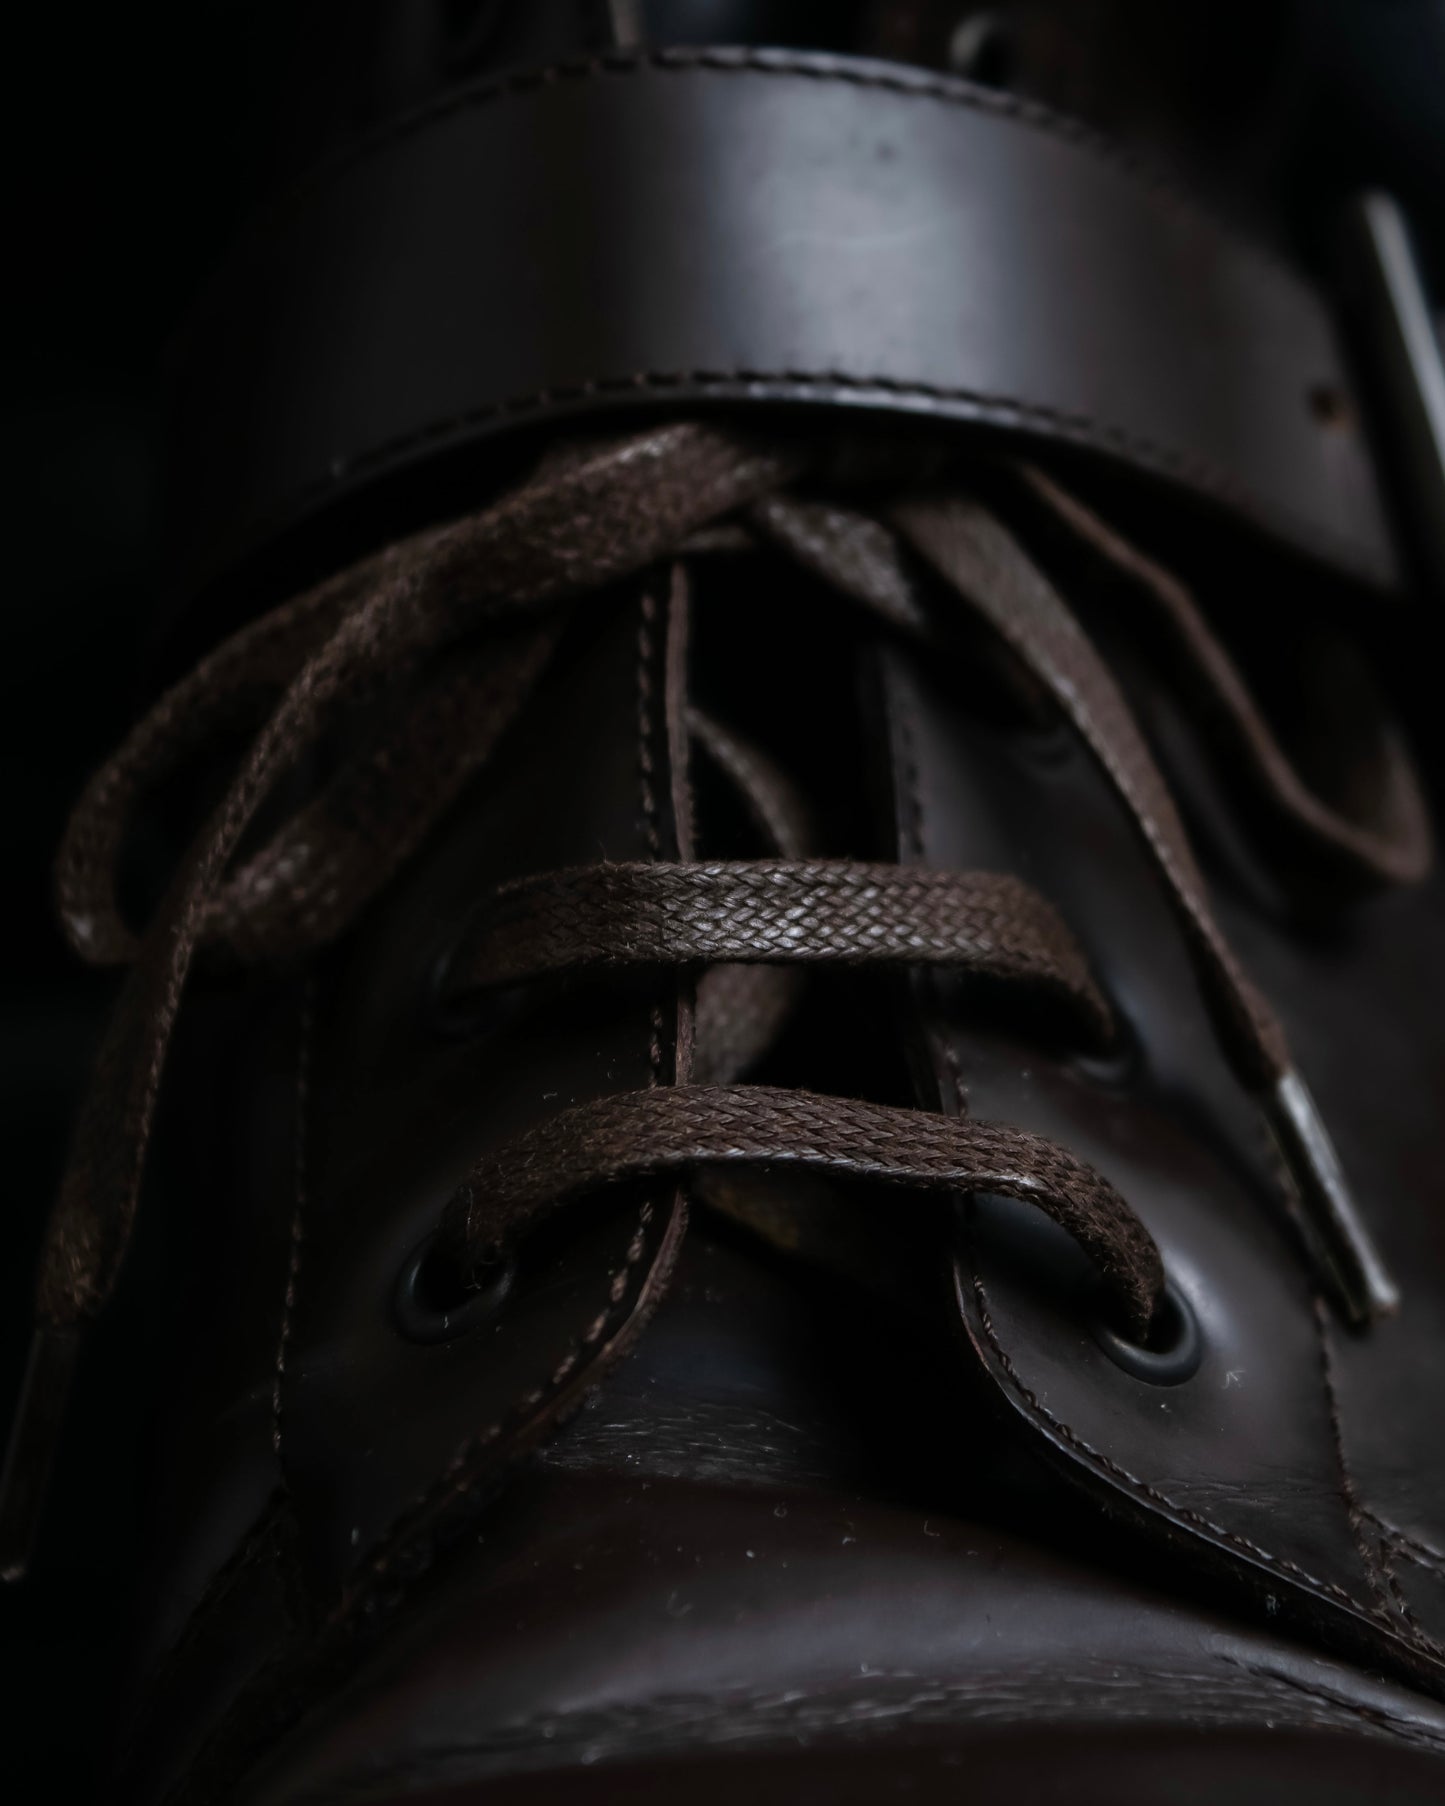 "PRADA" Belt design high cut boots